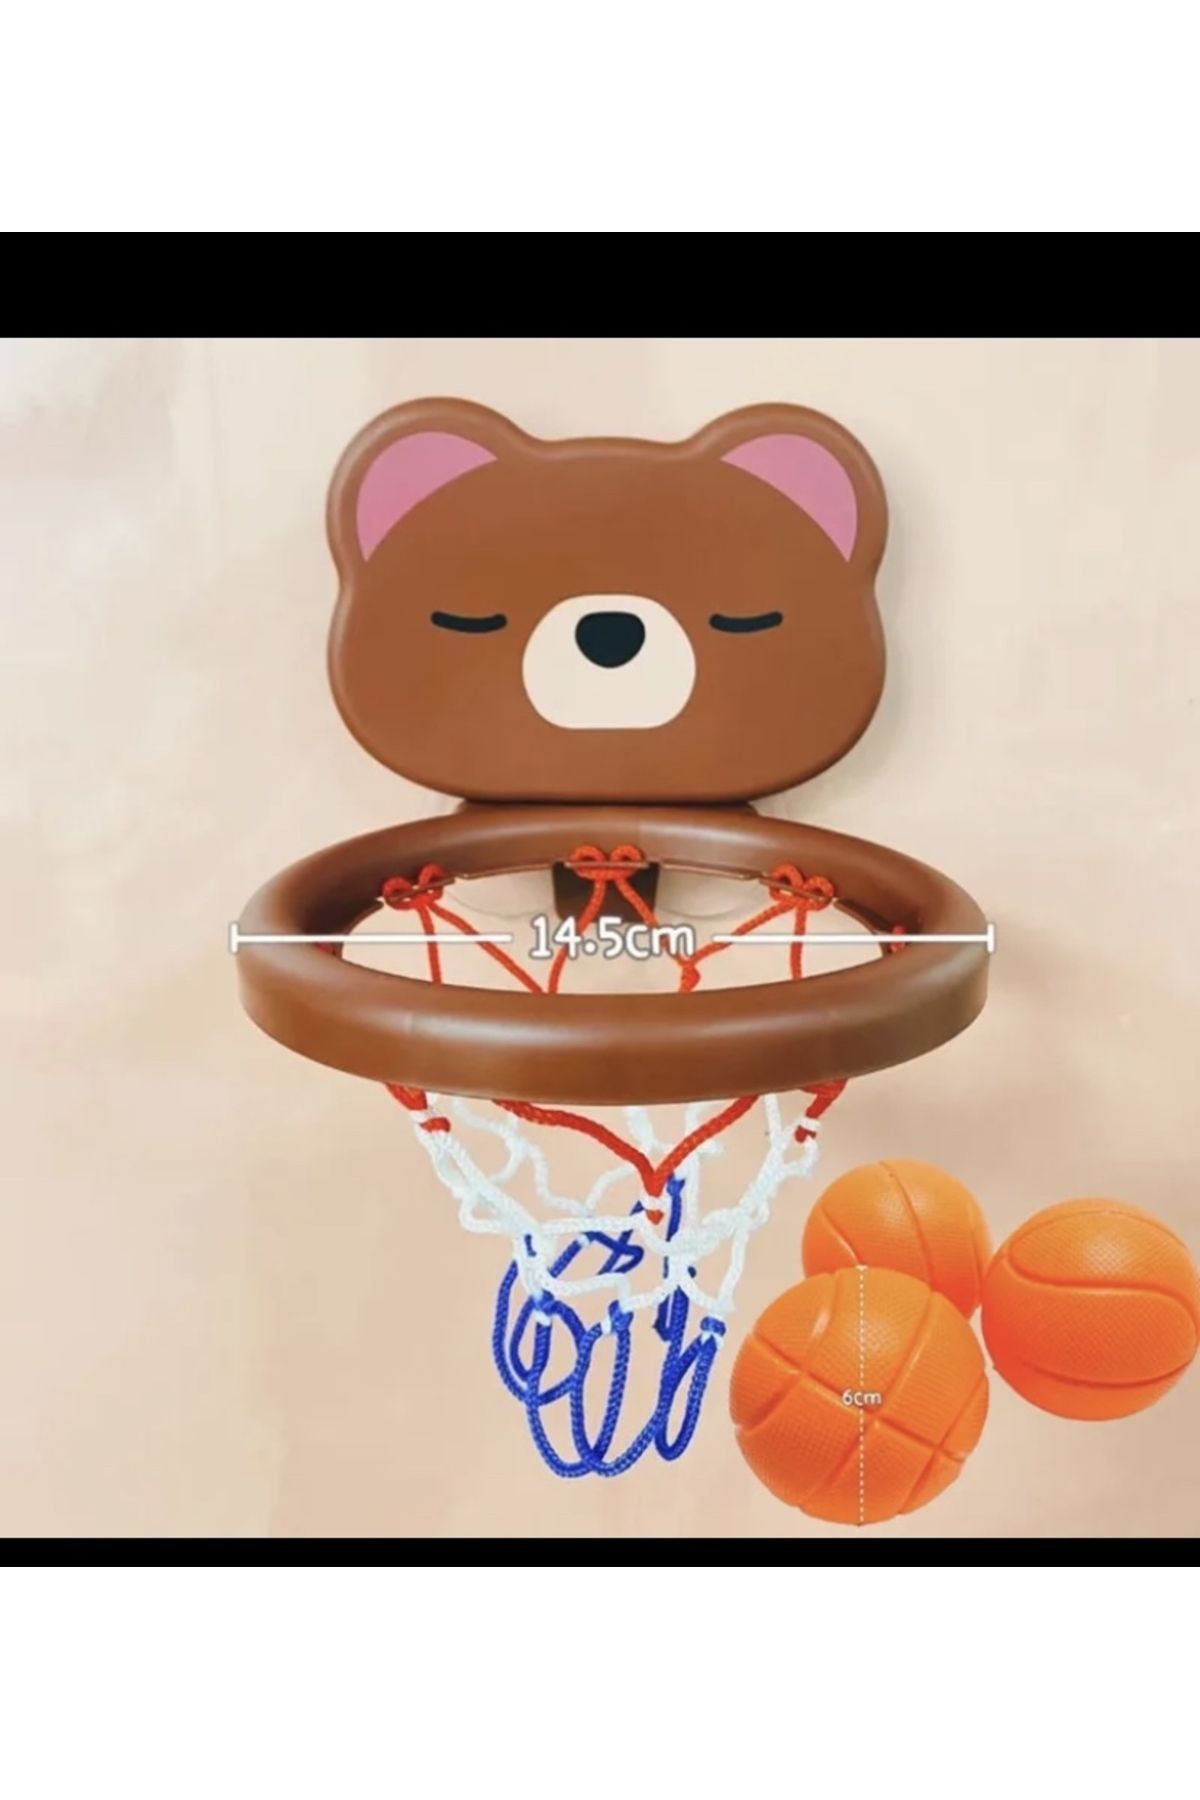 PEGA HOME Mini basket potası ayı figürlü